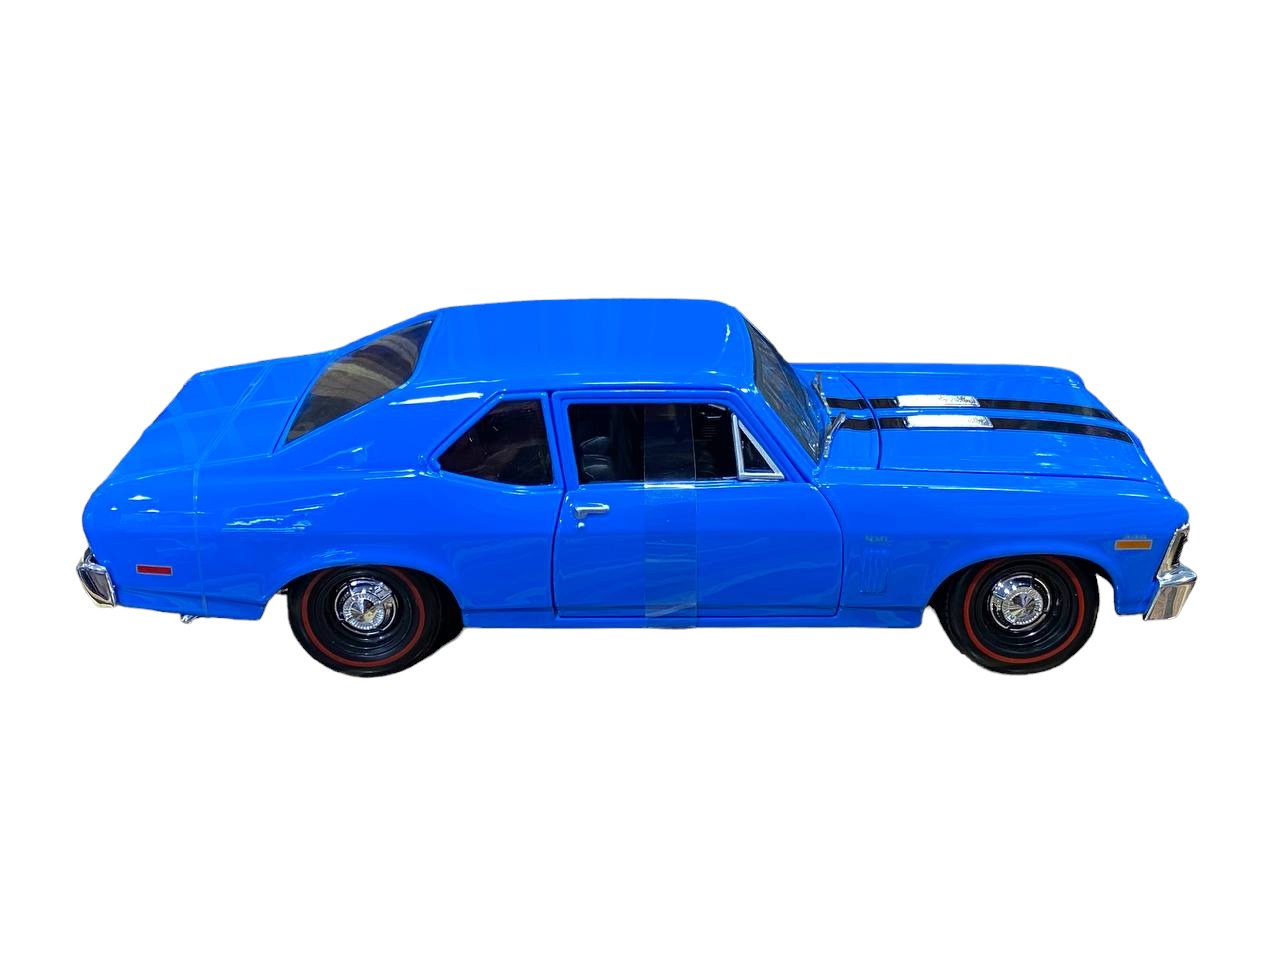 1/18 Maisto MAISTO Chevrolet Nova SS - Blue Scale Model Car|Sold in Dturman.com Dubai UAE.